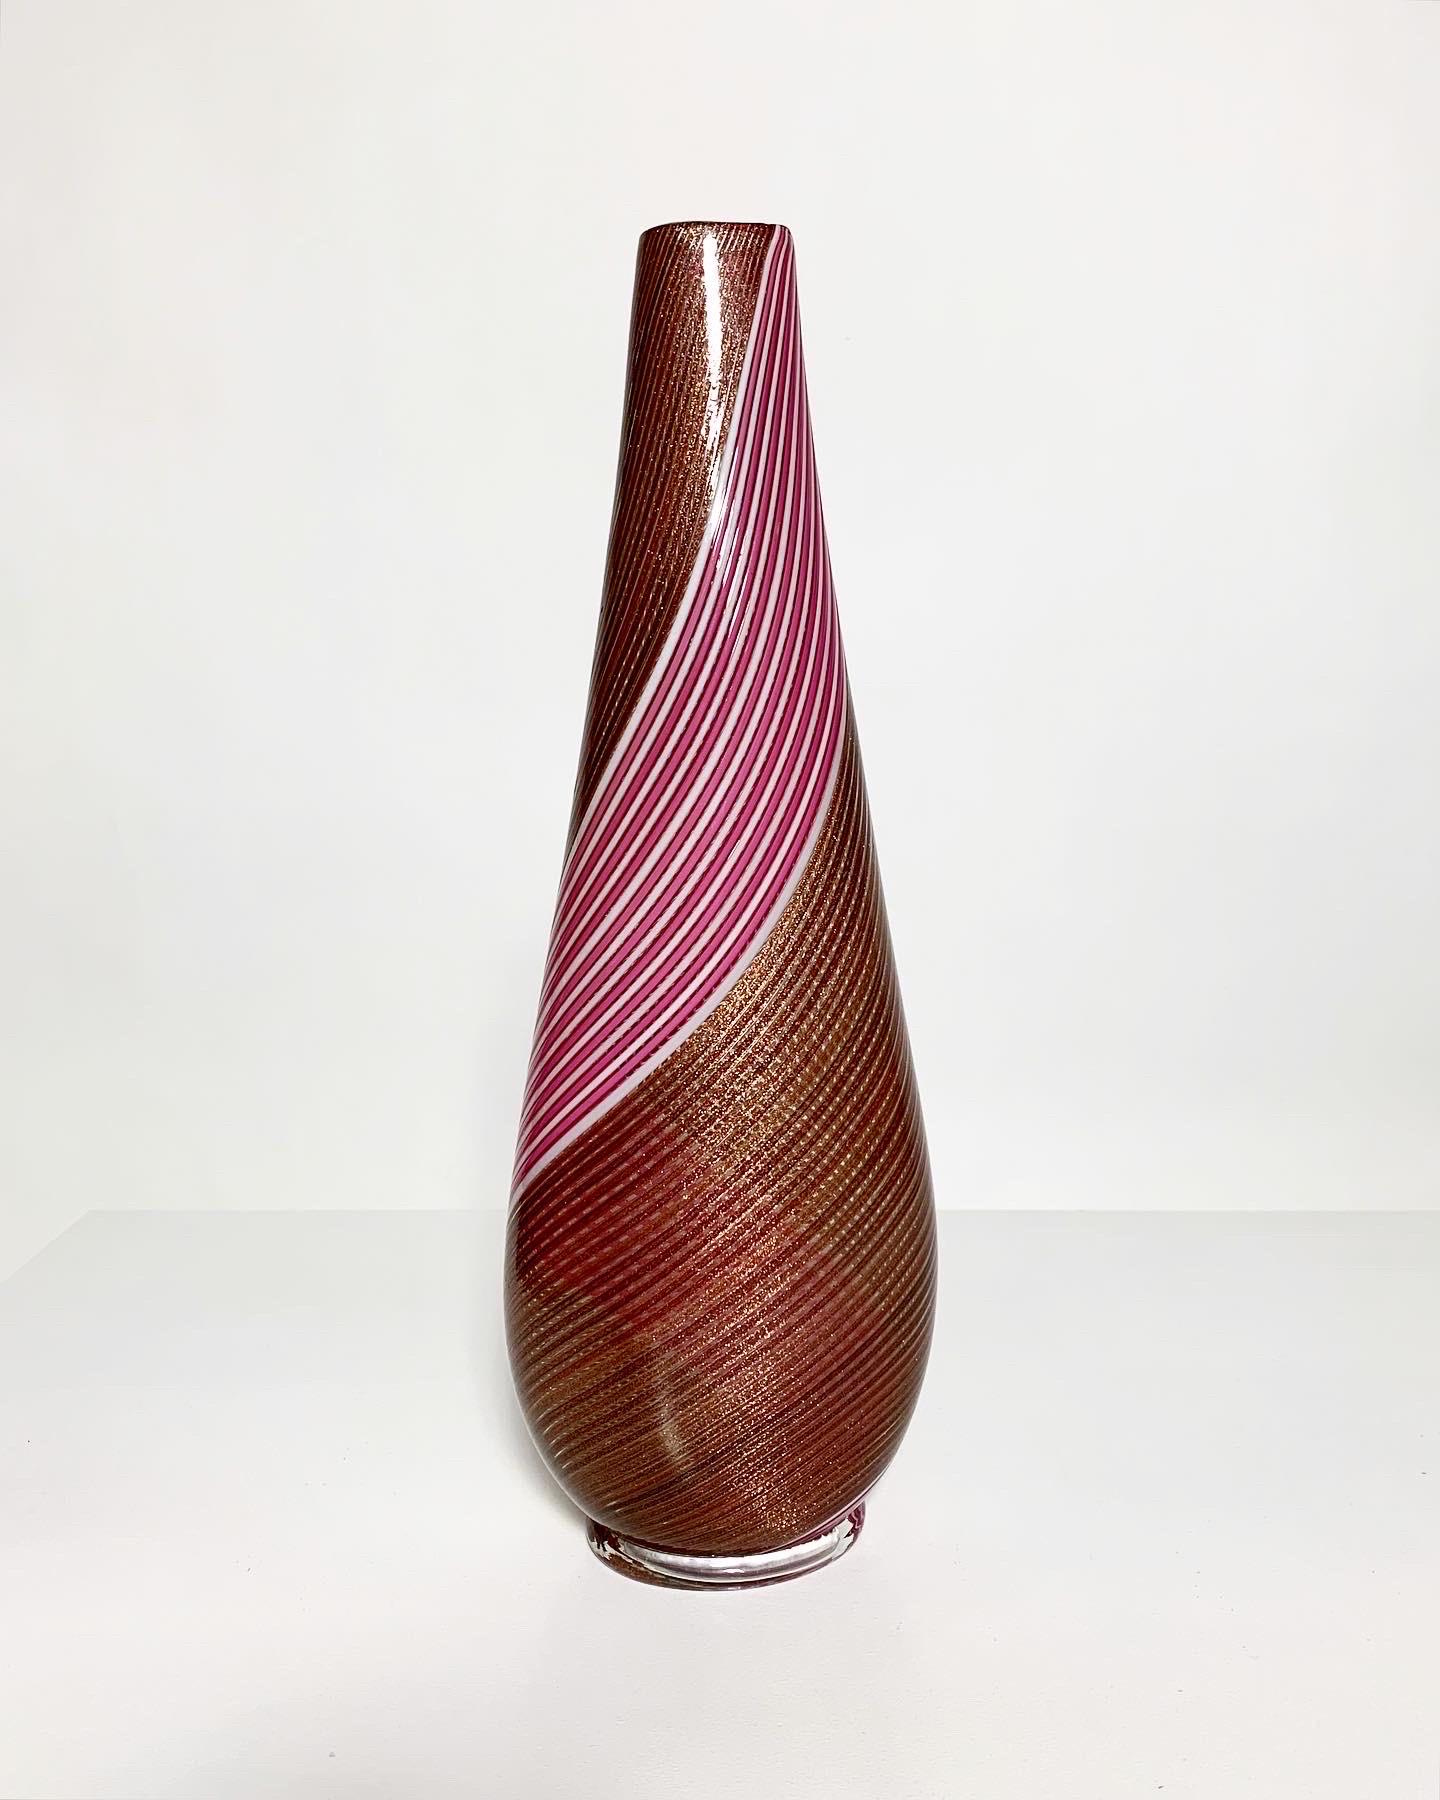 Rare vase en filigrane de Dino Martens dans une rare combinaison de couleurs rose et blanc avec des paillettes de bronze, soufflé à la bouche pour la Vetreria Aureliano Toso en 1954.

Le modèle porte le numéro 5831, la technique est appelée